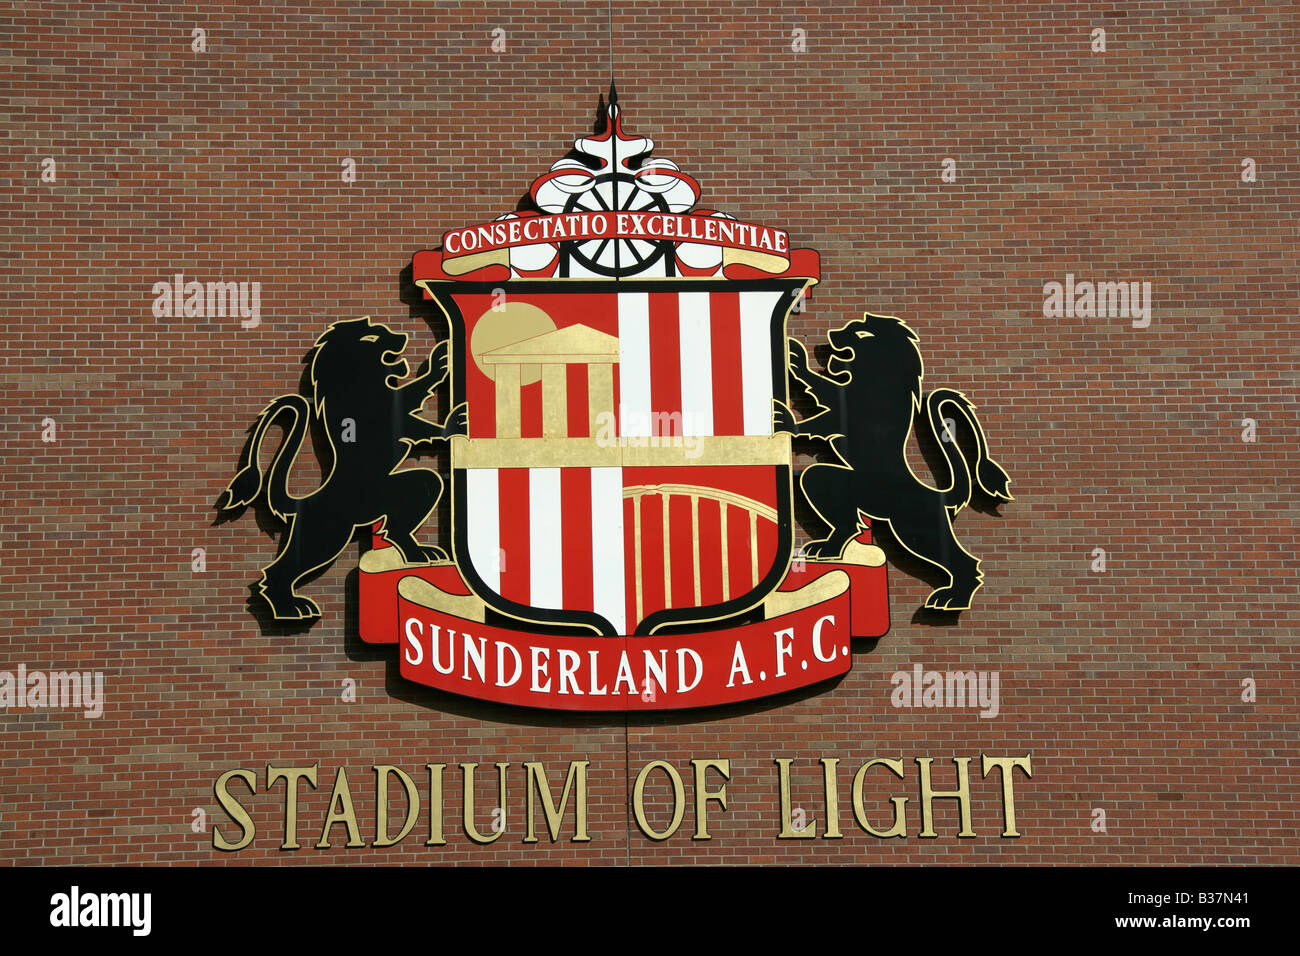 La ciudad de Sunderland, Inglaterra. Fútbol Sunderland AFC un escudo en la fachada oeste del estadio de la luz. Foto de stock